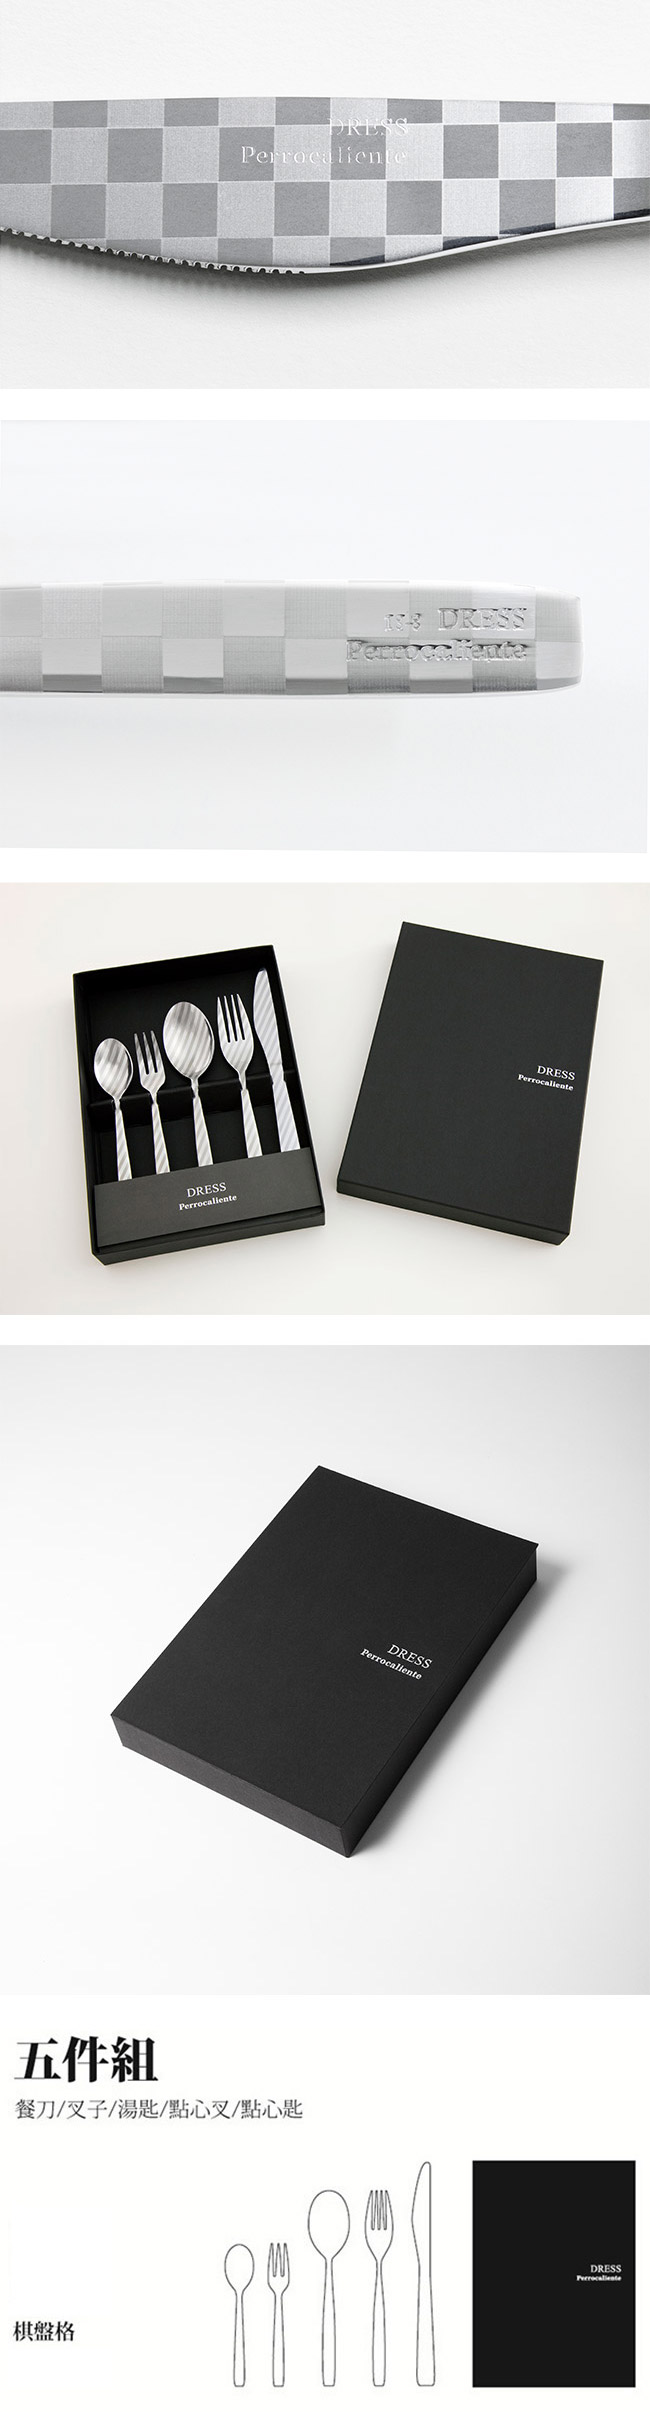 【3/26~4/1精選品牌9折優惠】Perrocaliente Dress Gift Set 銀色盒裝餐具組 五件組 棋盤格